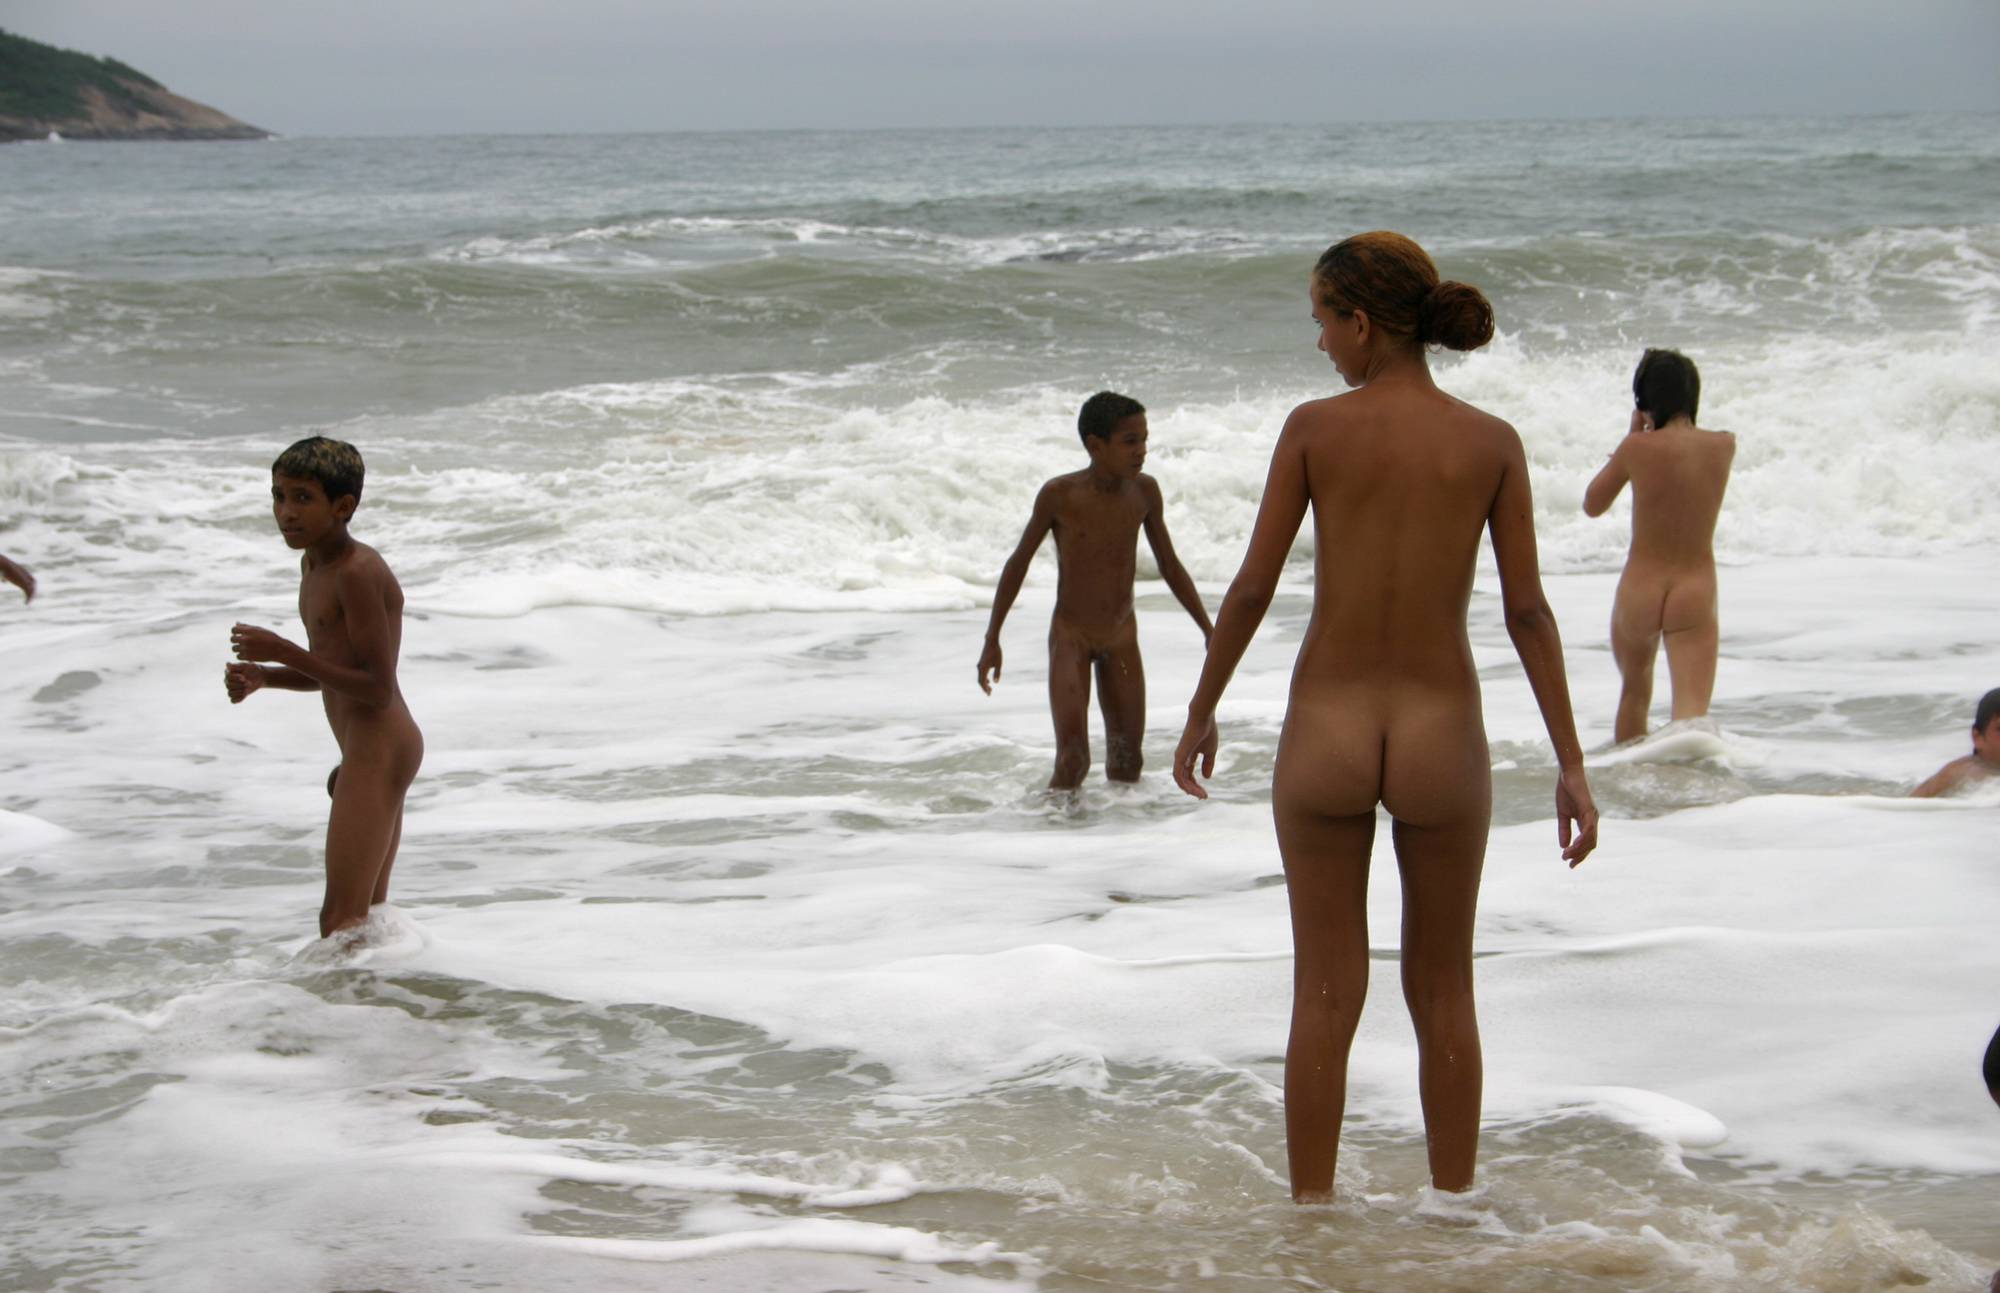 Pure Nudism Images-Brazilian Coastal Splashes - 1